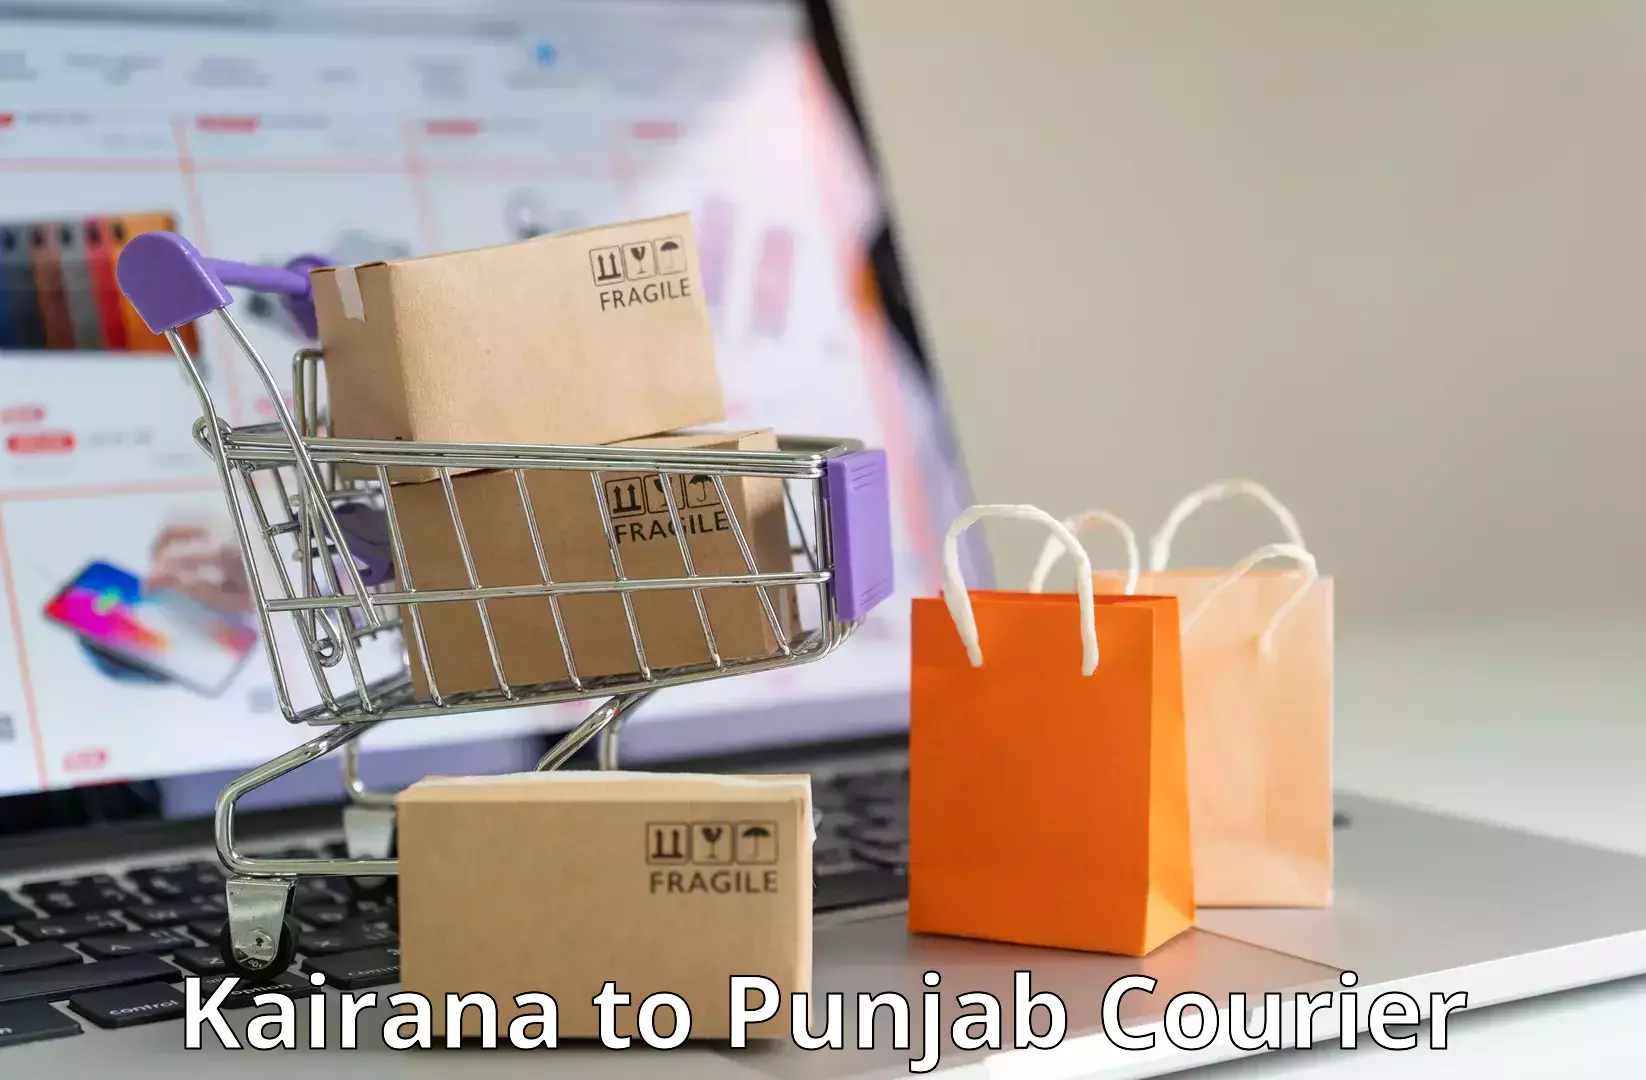 Punctual parcel services Kairana to Jhunir